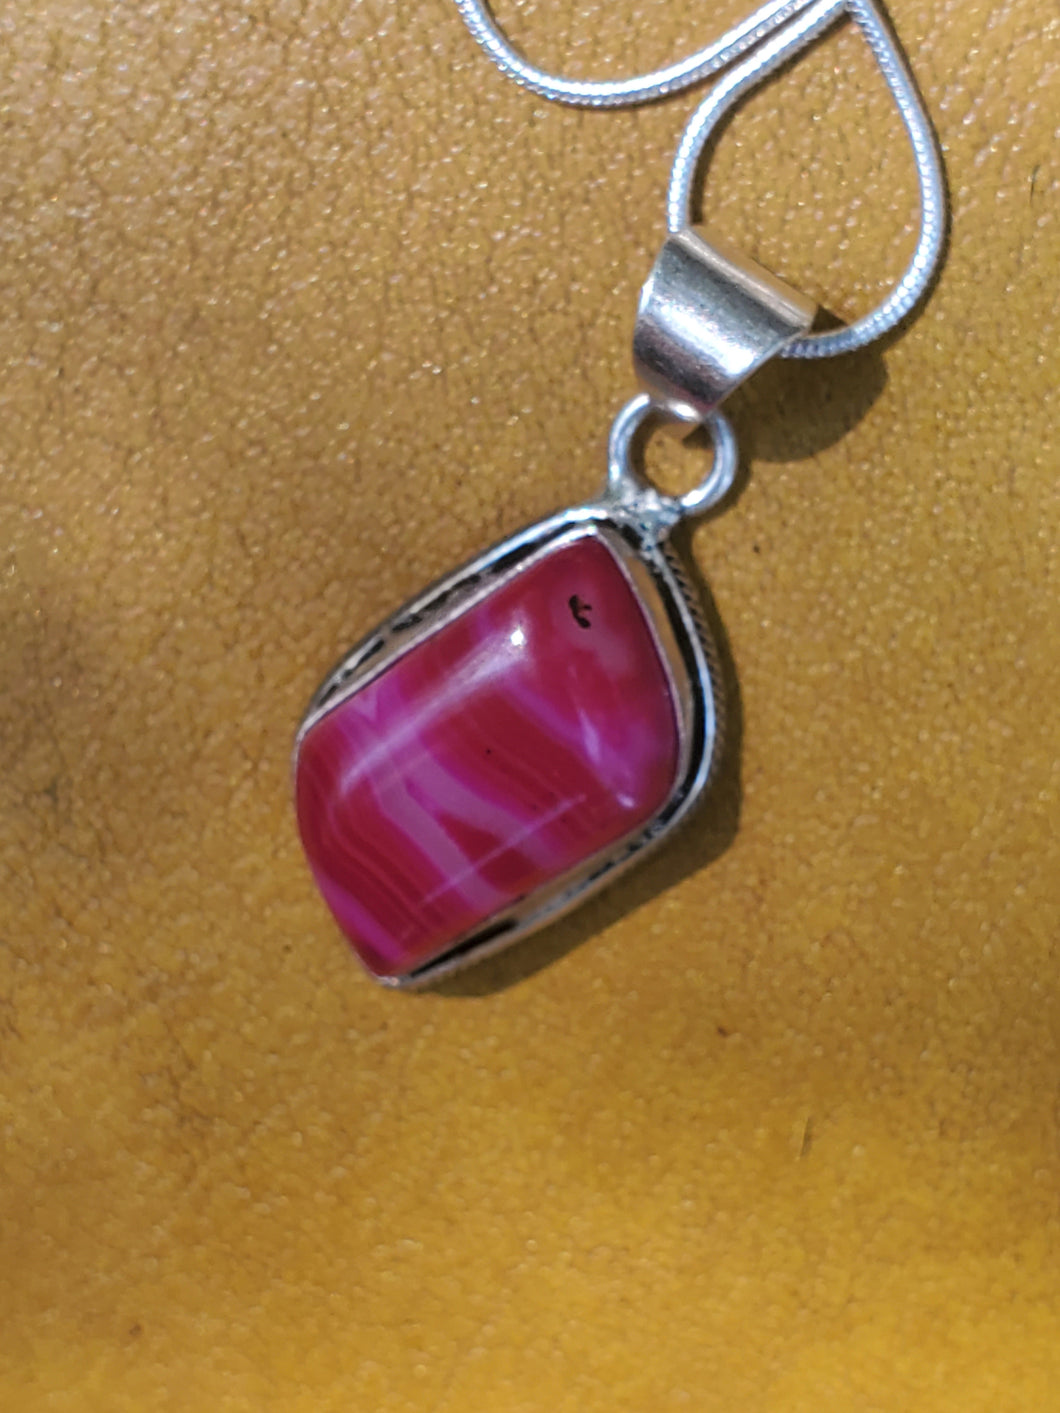 Pink Swatch Gemstone Silver Necklace